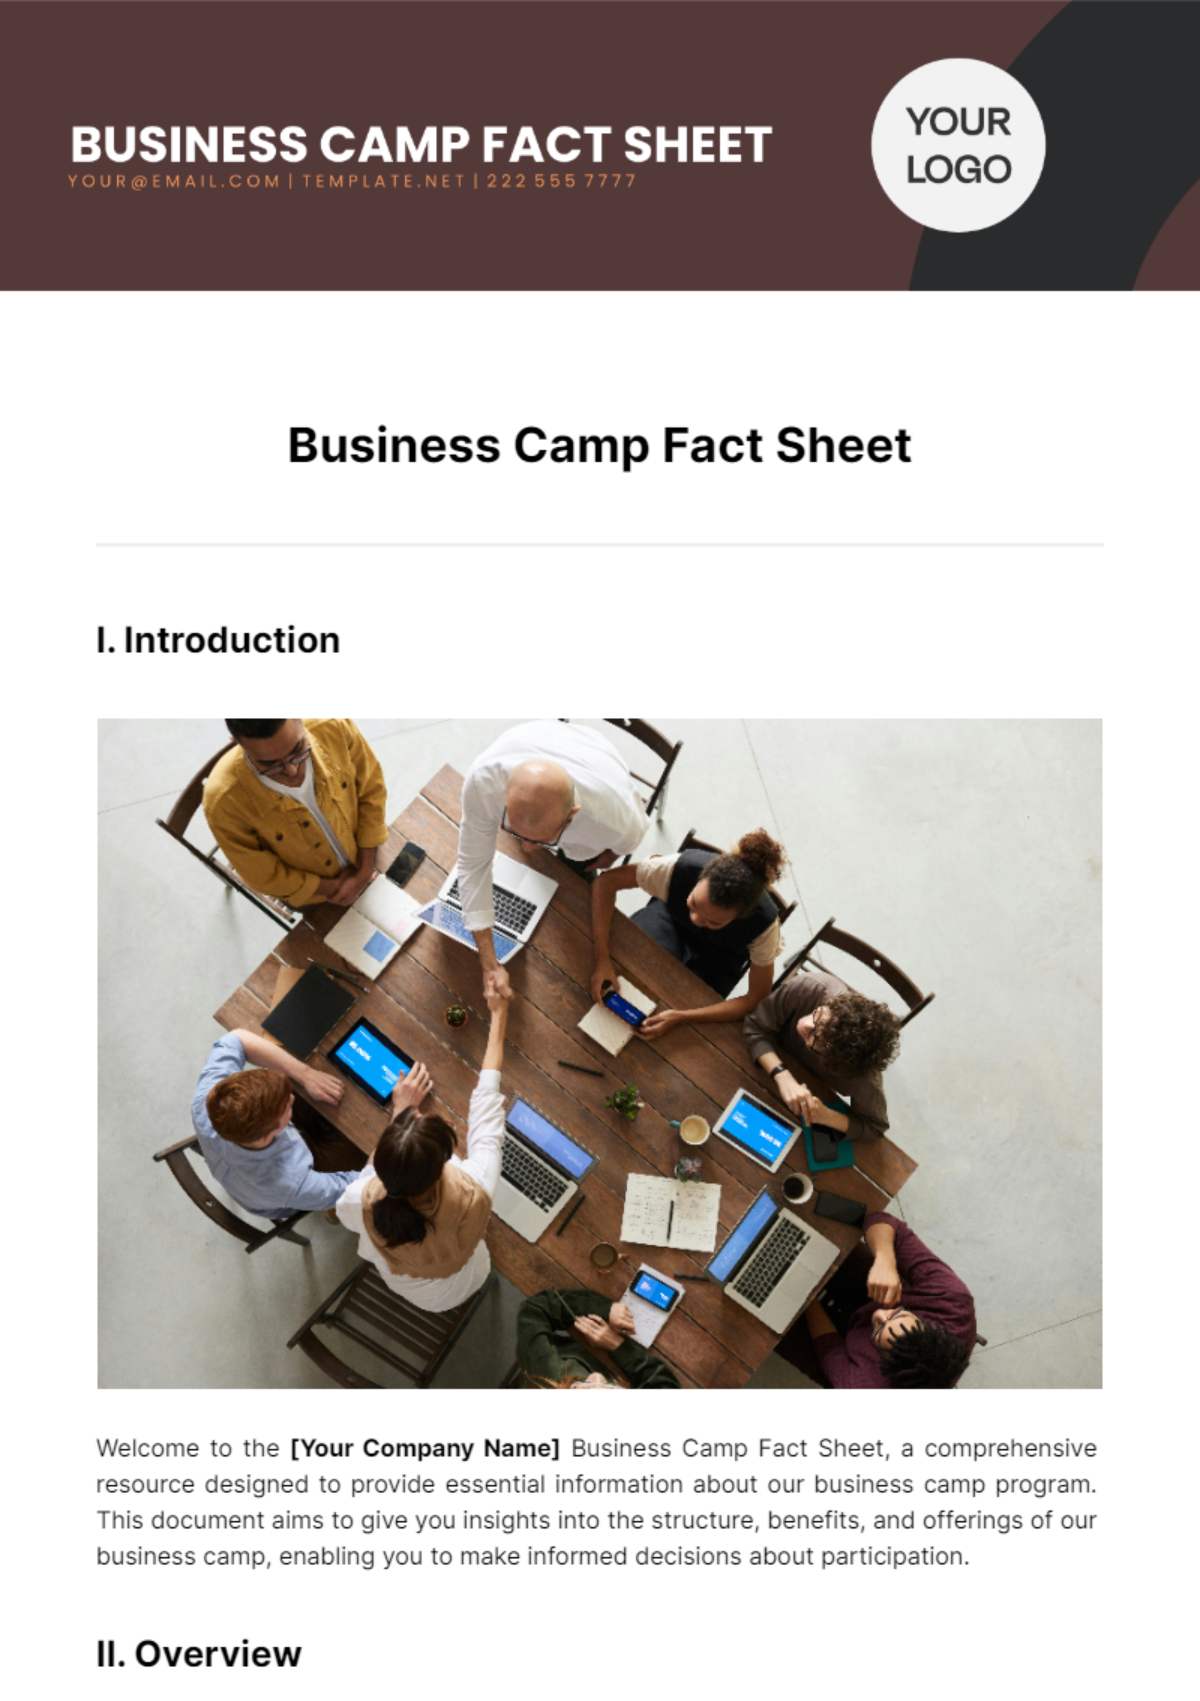 Business Camp Fact Sheet Template